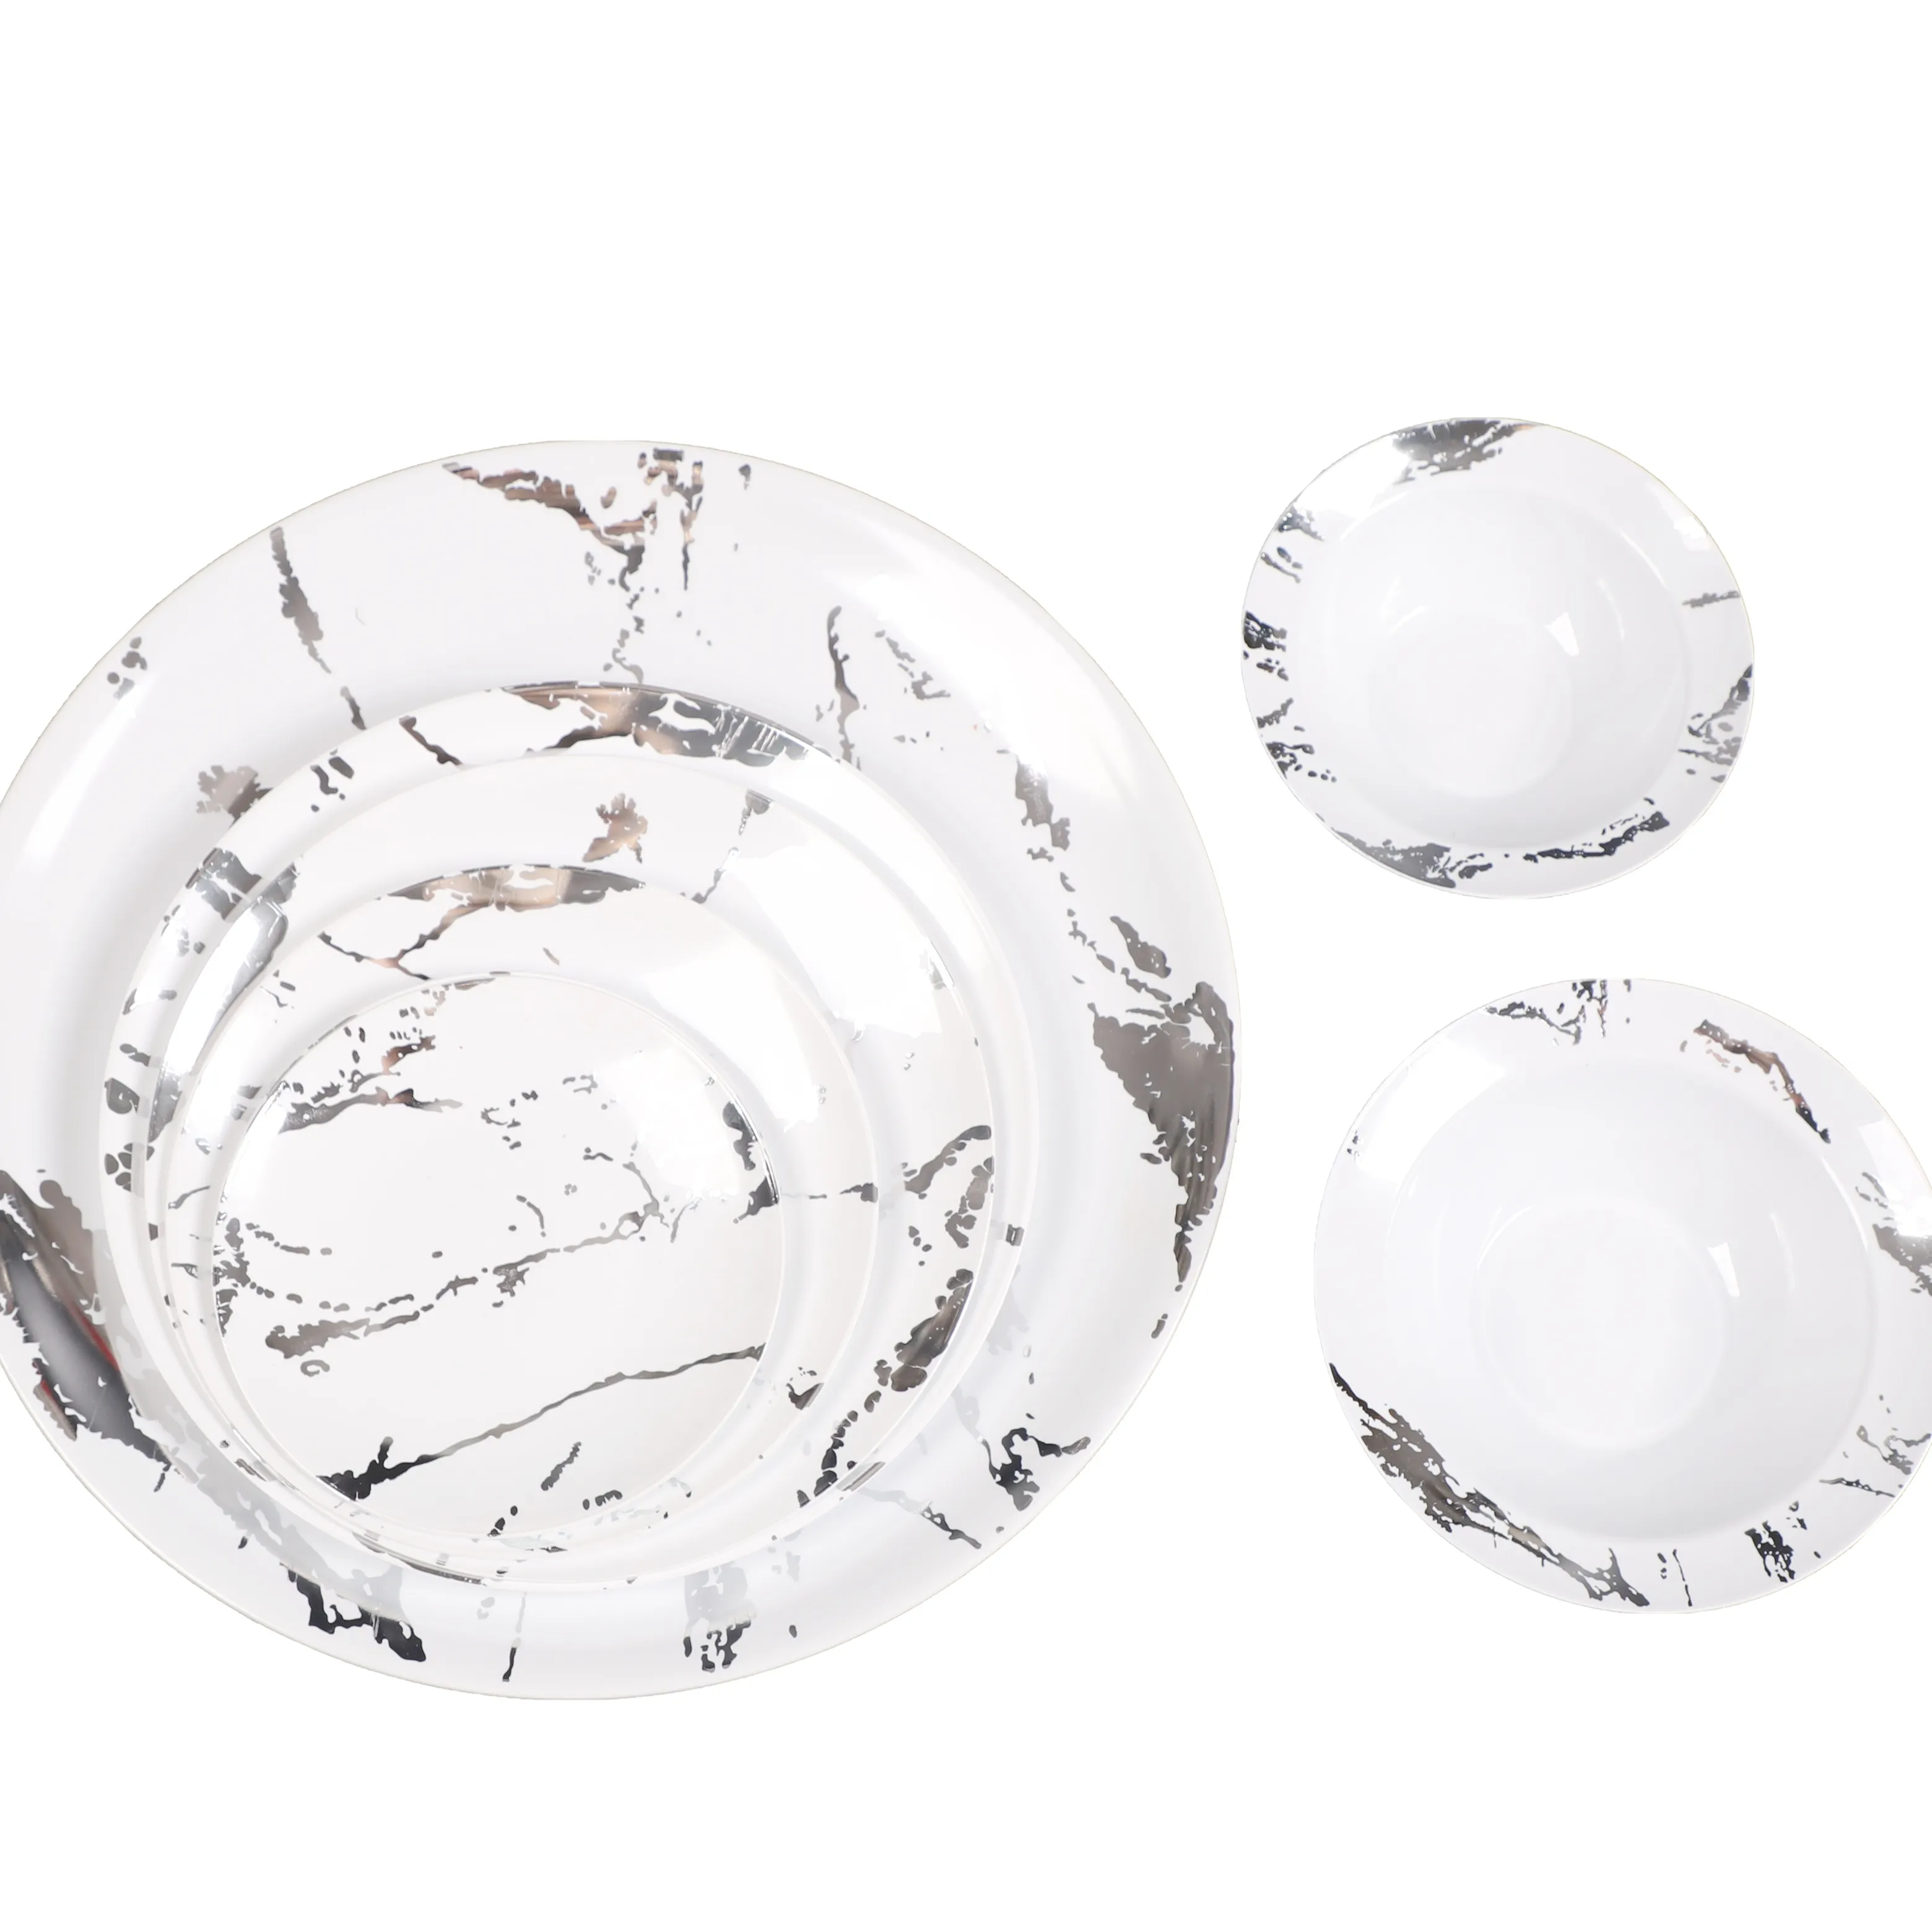 흰색 플라스틱 접시 실버 대리석 디자인 라운드 일회용 플라스틱 식기 플라스틱 접시